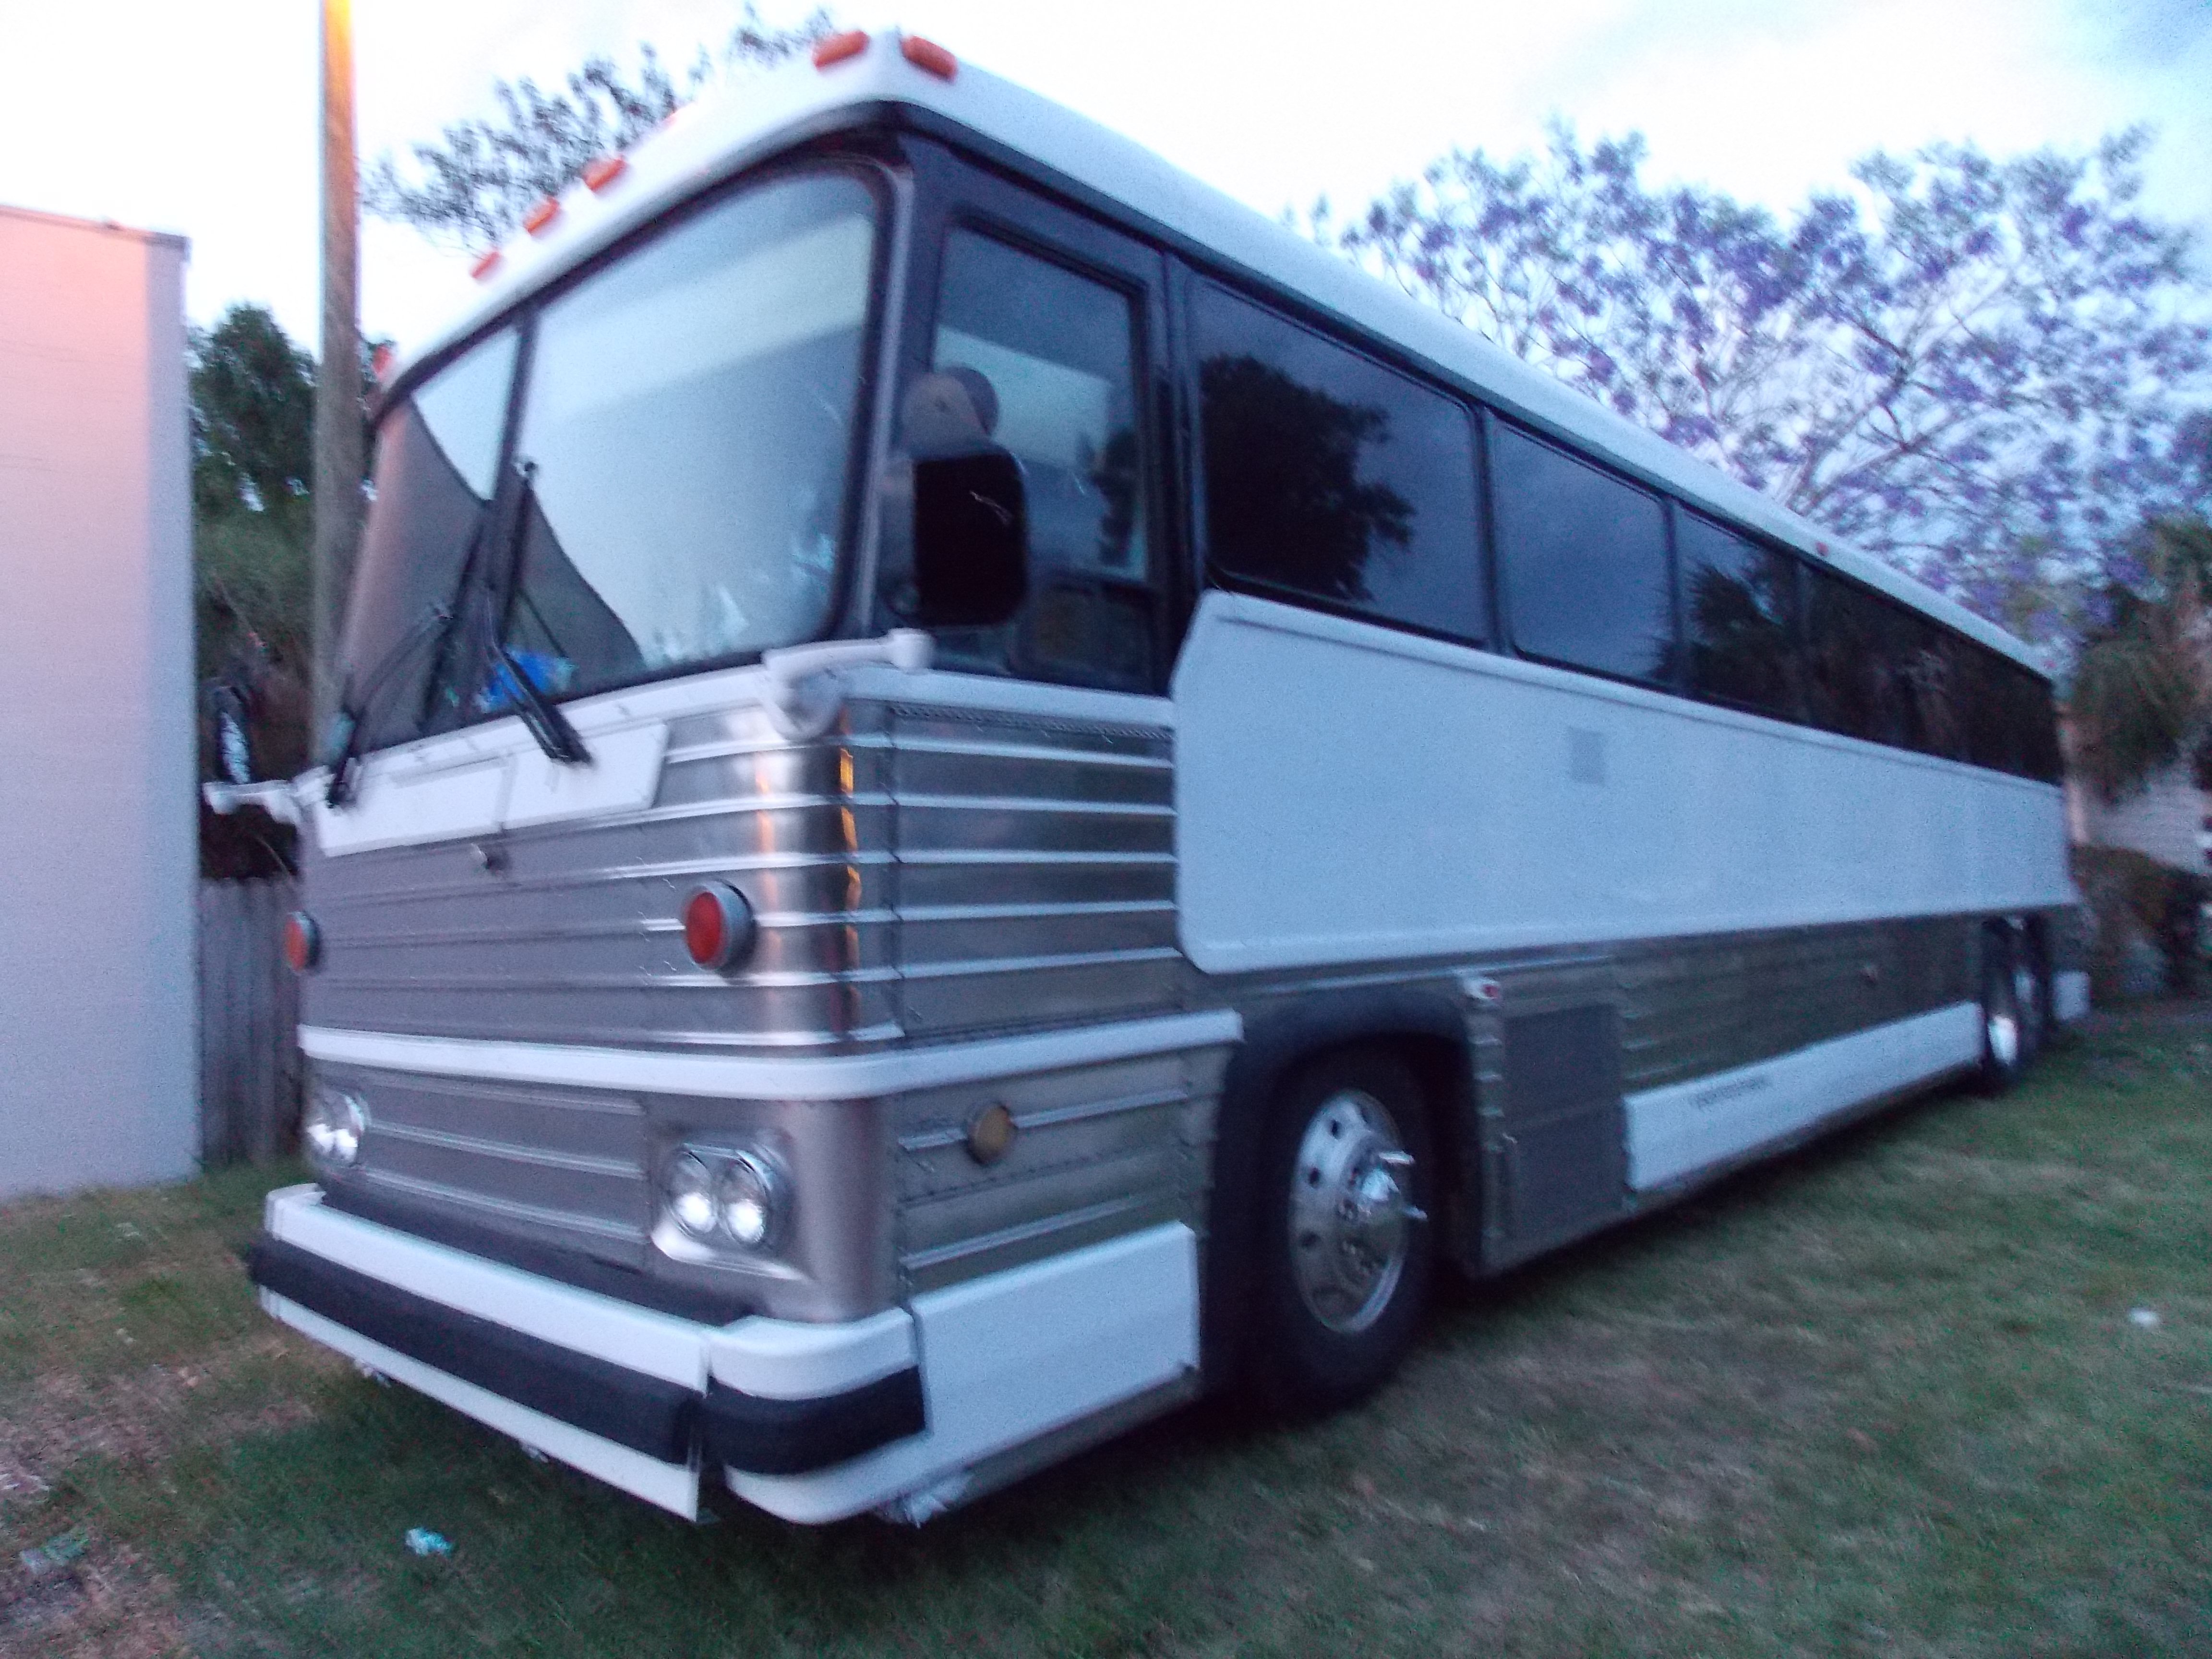 Bus Plus Services Tampa, FL 33607 - YP.com